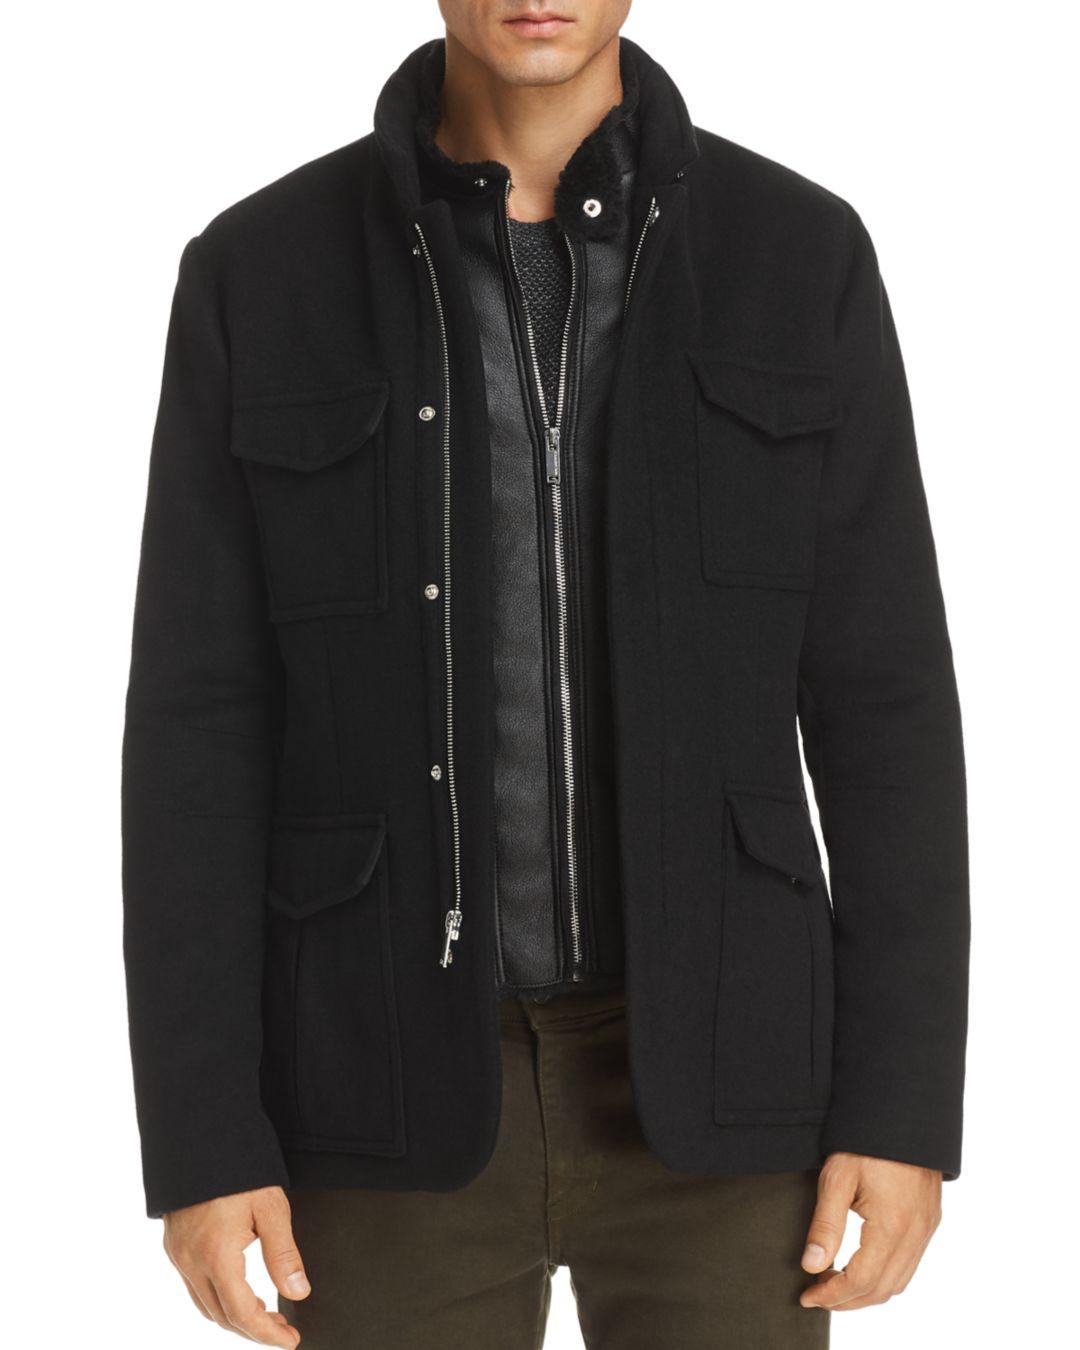 Karl Lagerfeld Faux - Shearling Bibbed Jacket in Black for Men - Lyst